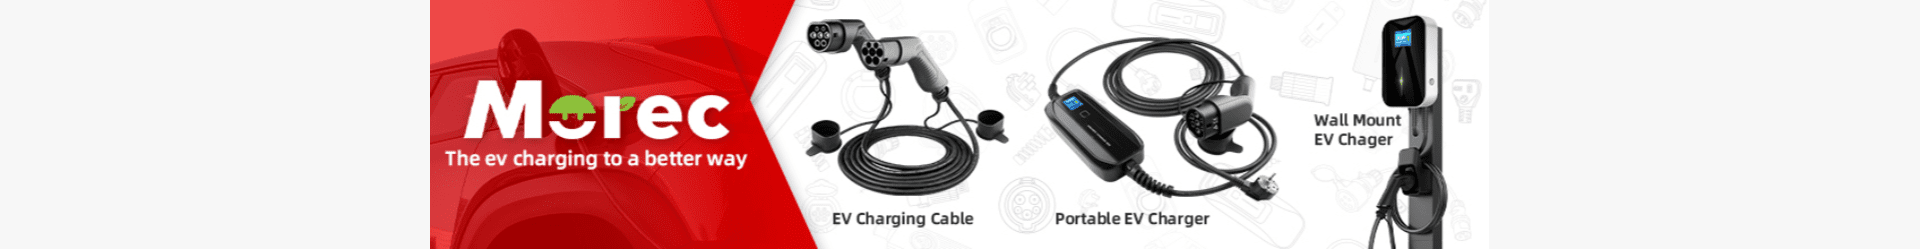 Morec-EV-charger